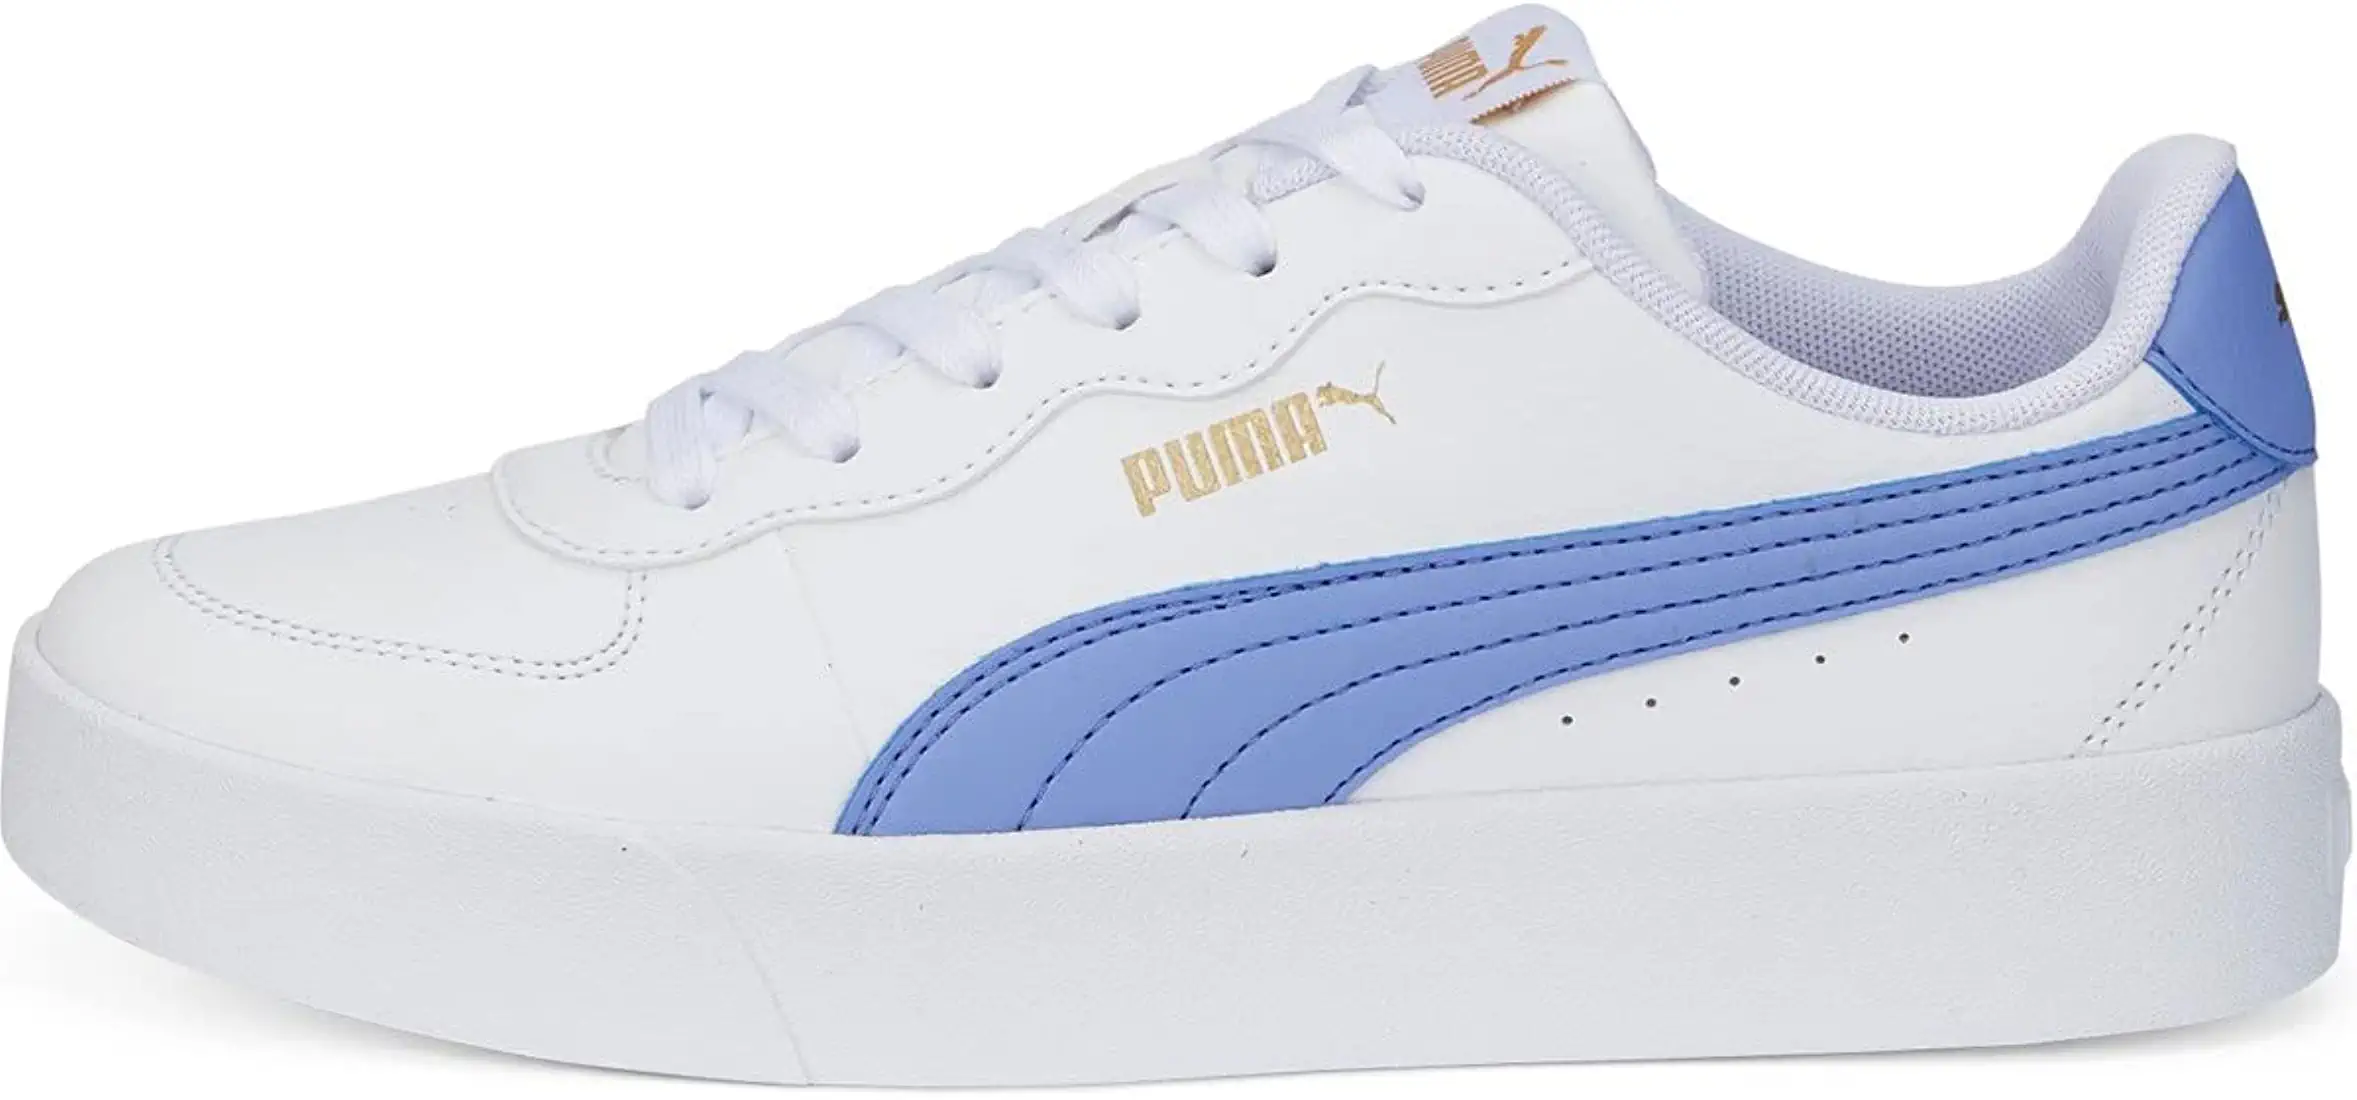 Puma Skye Clean Women's Shoes Sneaker